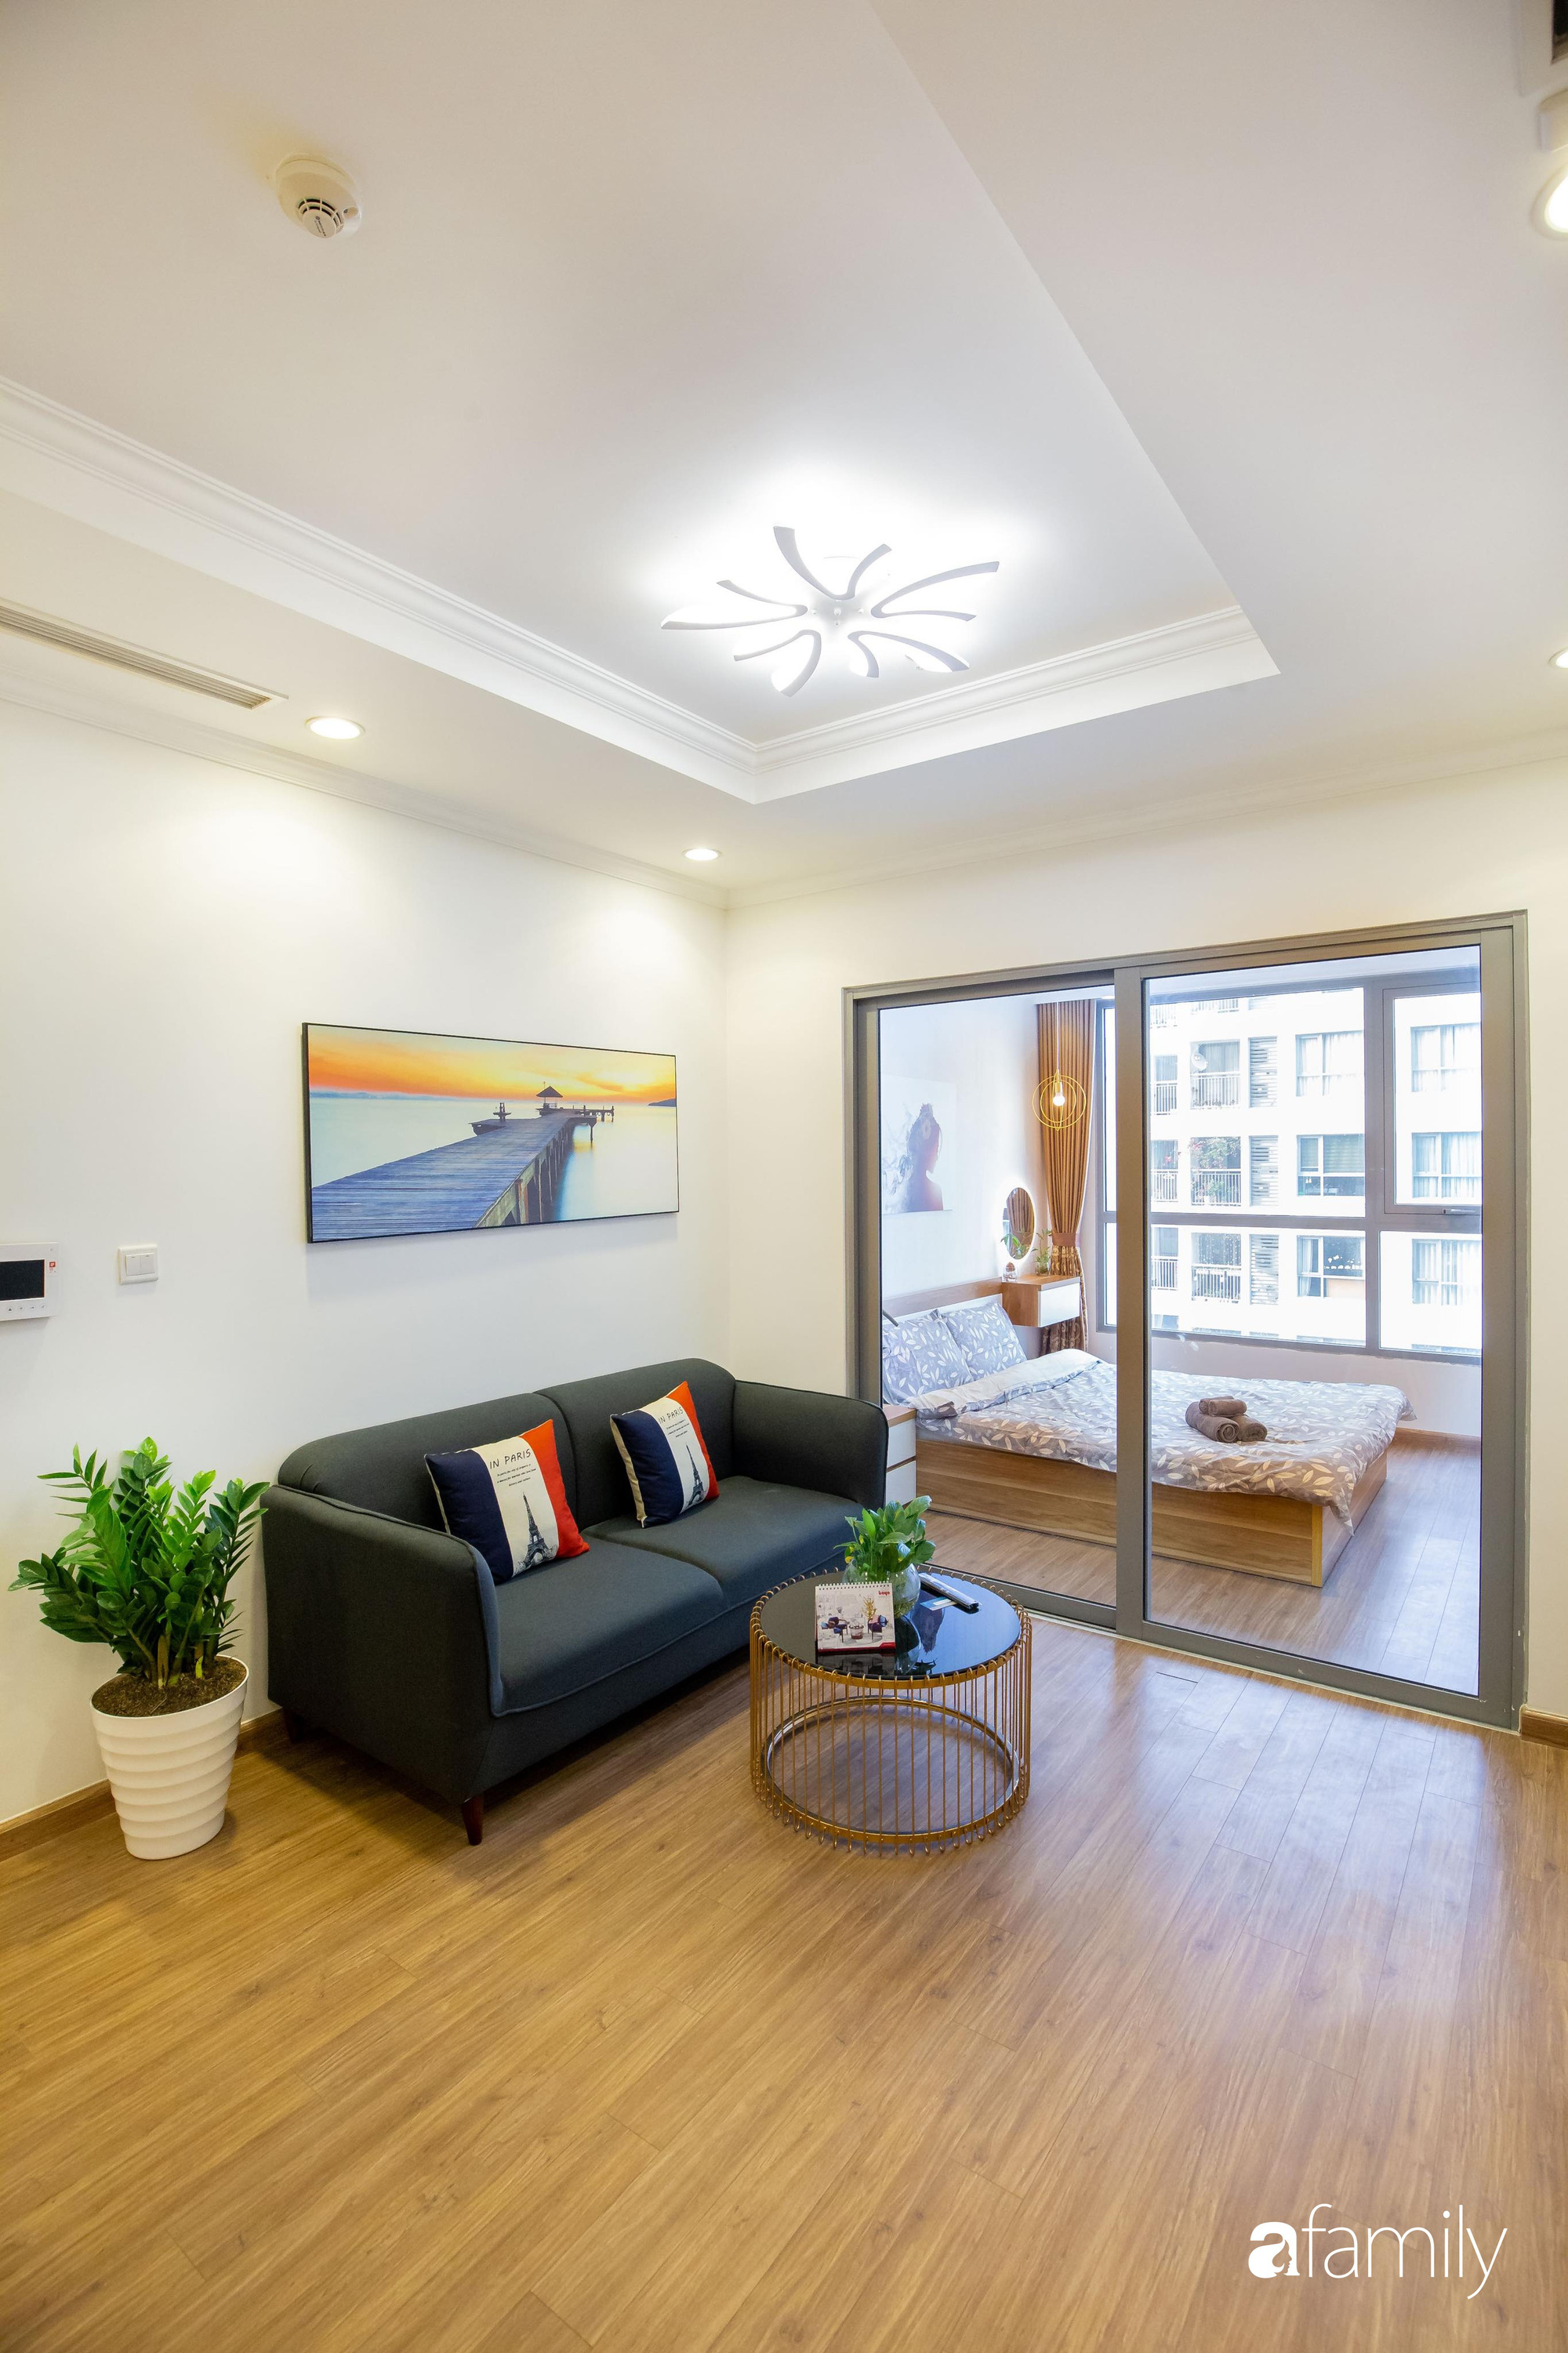 Thiết kế đơn giản với nội thất tiện nghi, căn hộ 53m2 trên tầng cao khiến nhiều người ao ước sở hữu ở Hà Nội - Ảnh 4.